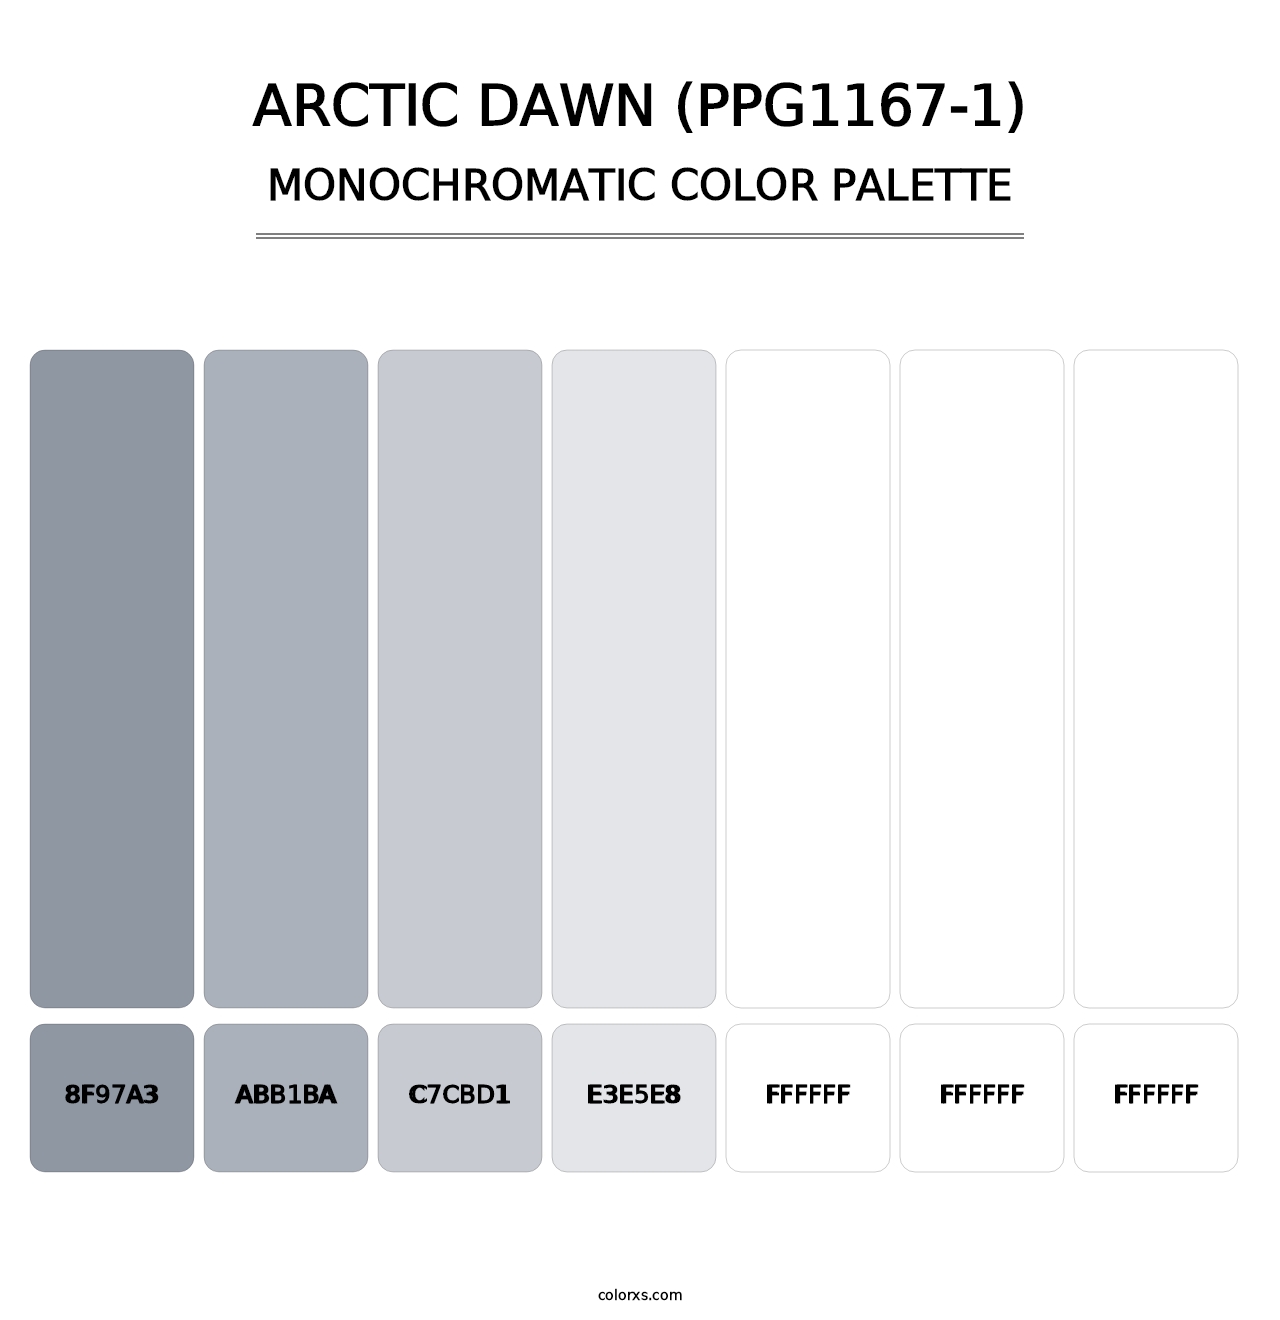 Arctic Dawn (PPG1167-1) - Monochromatic Color Palette